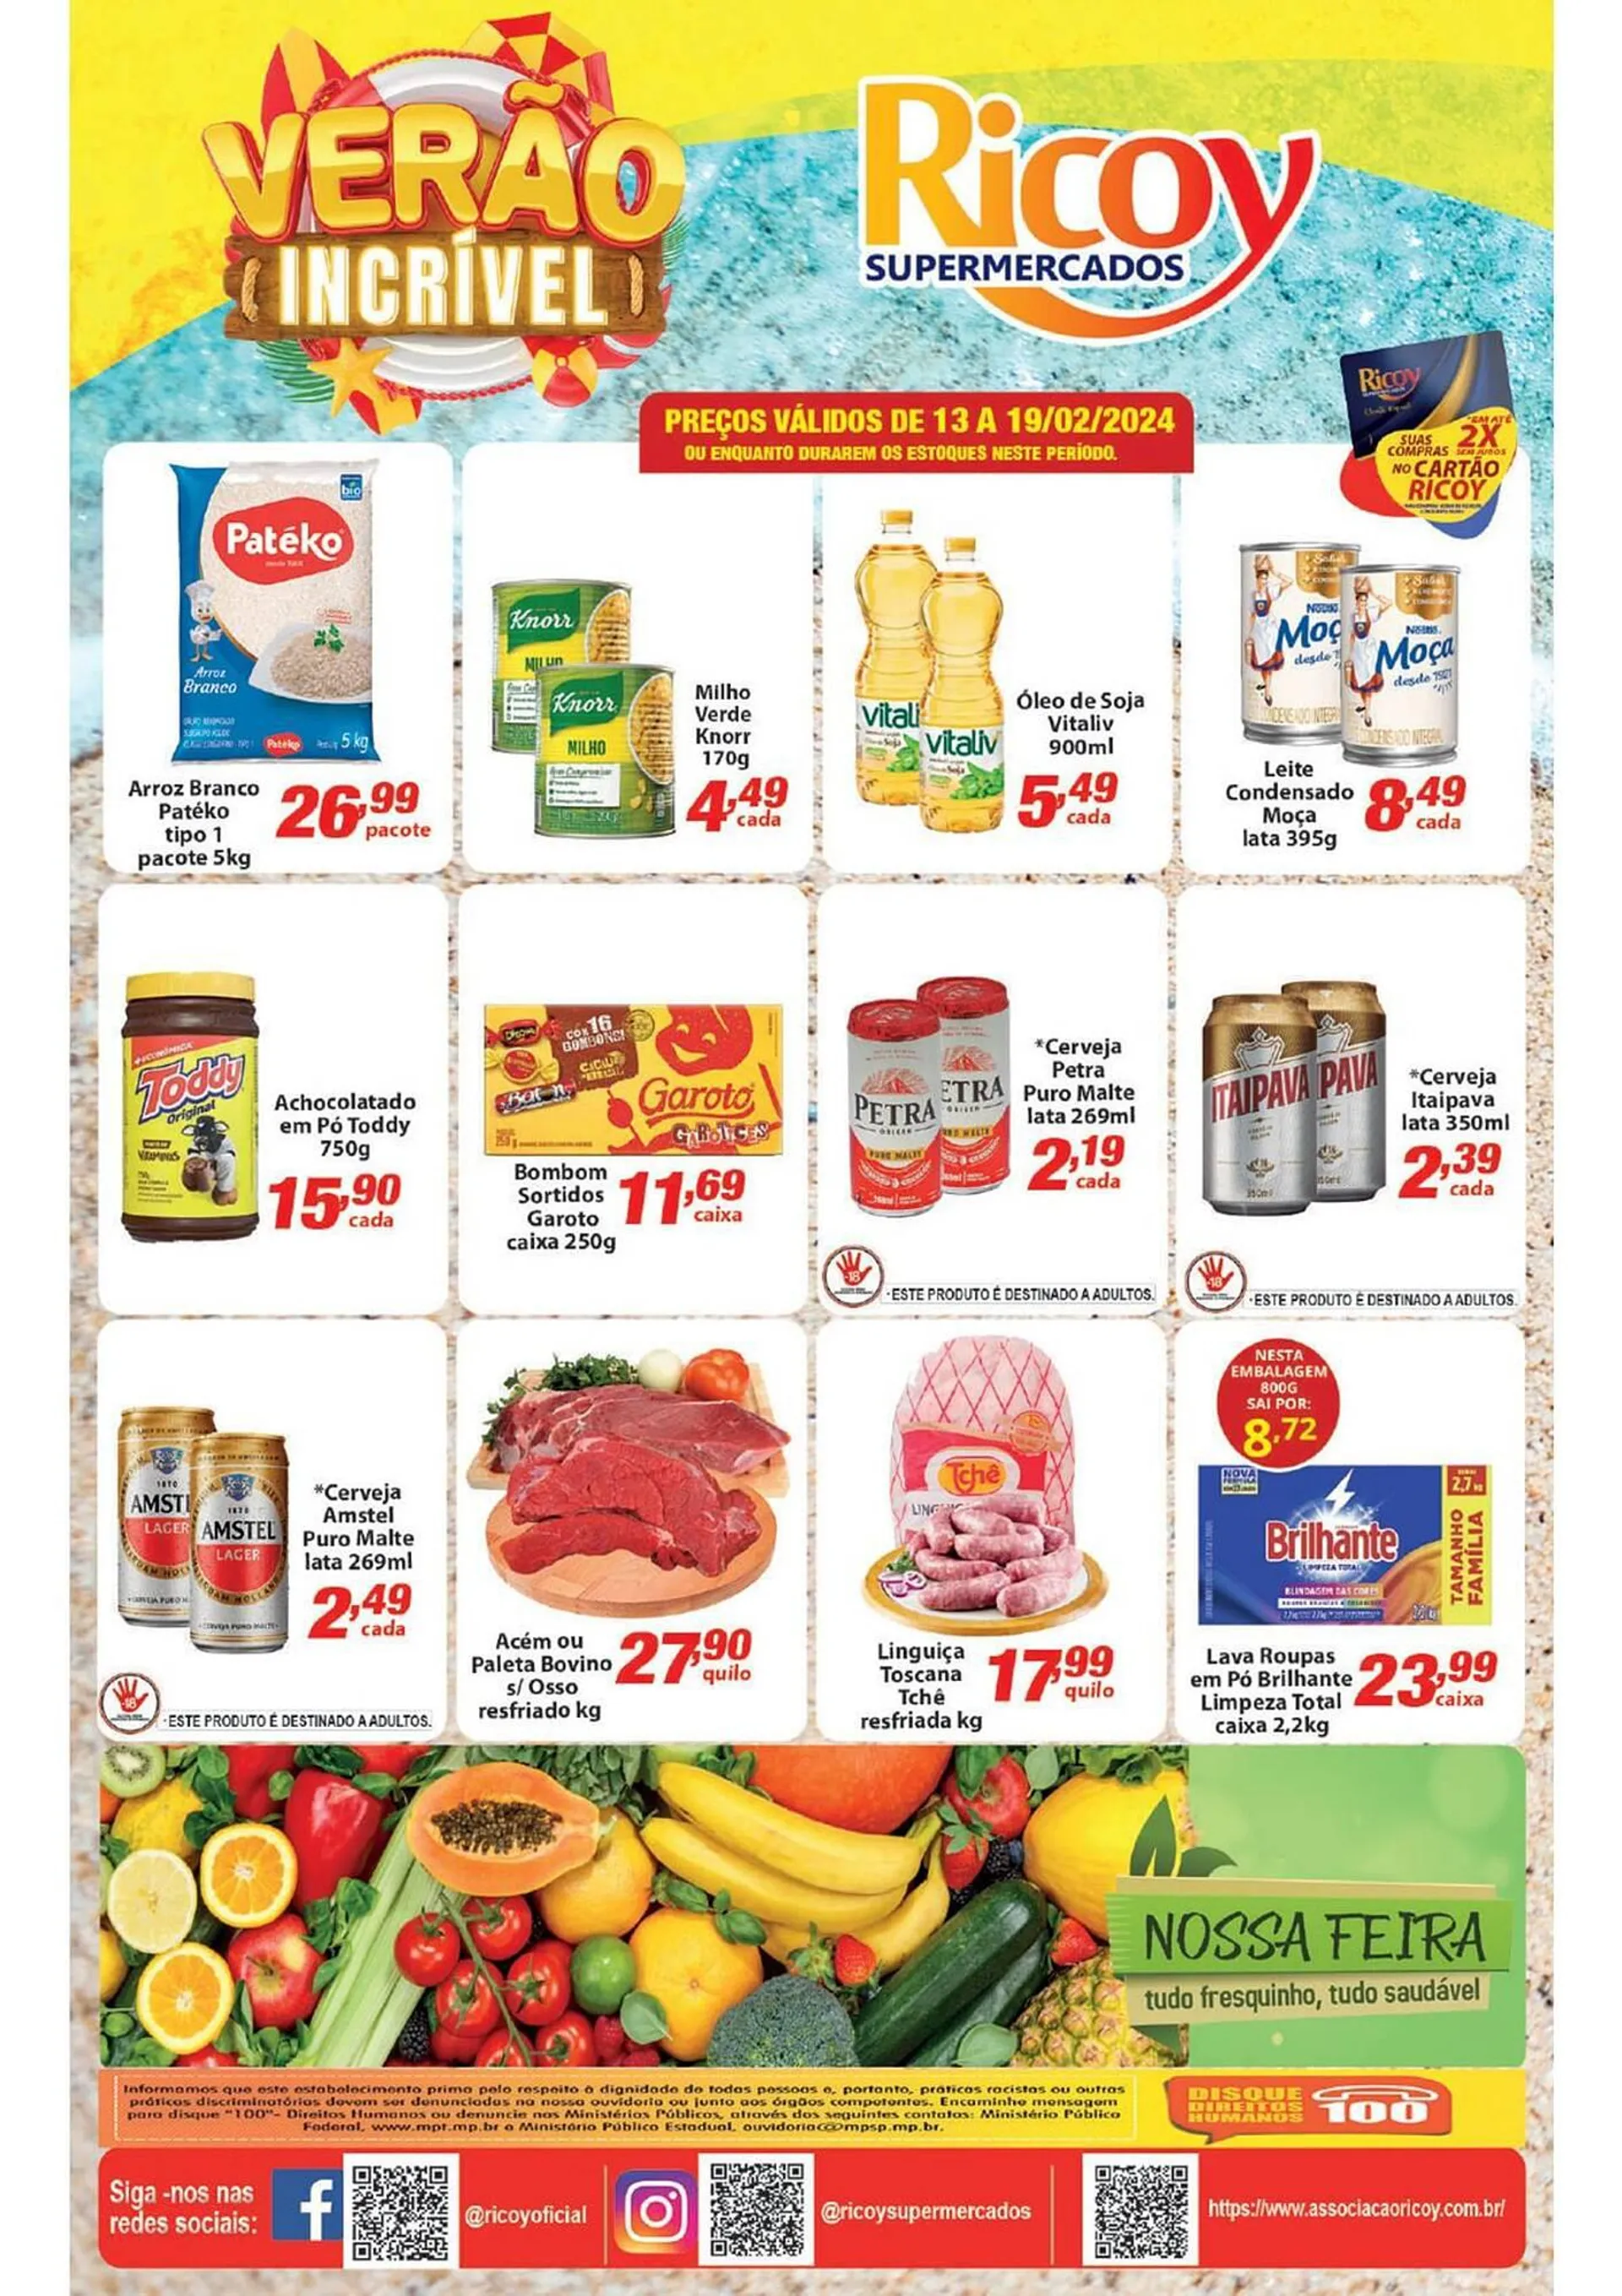 Encarte de Catálogo Ricoy Supermercados 15 de fevereiro até 19 de fevereiro 2024 - Pagina 